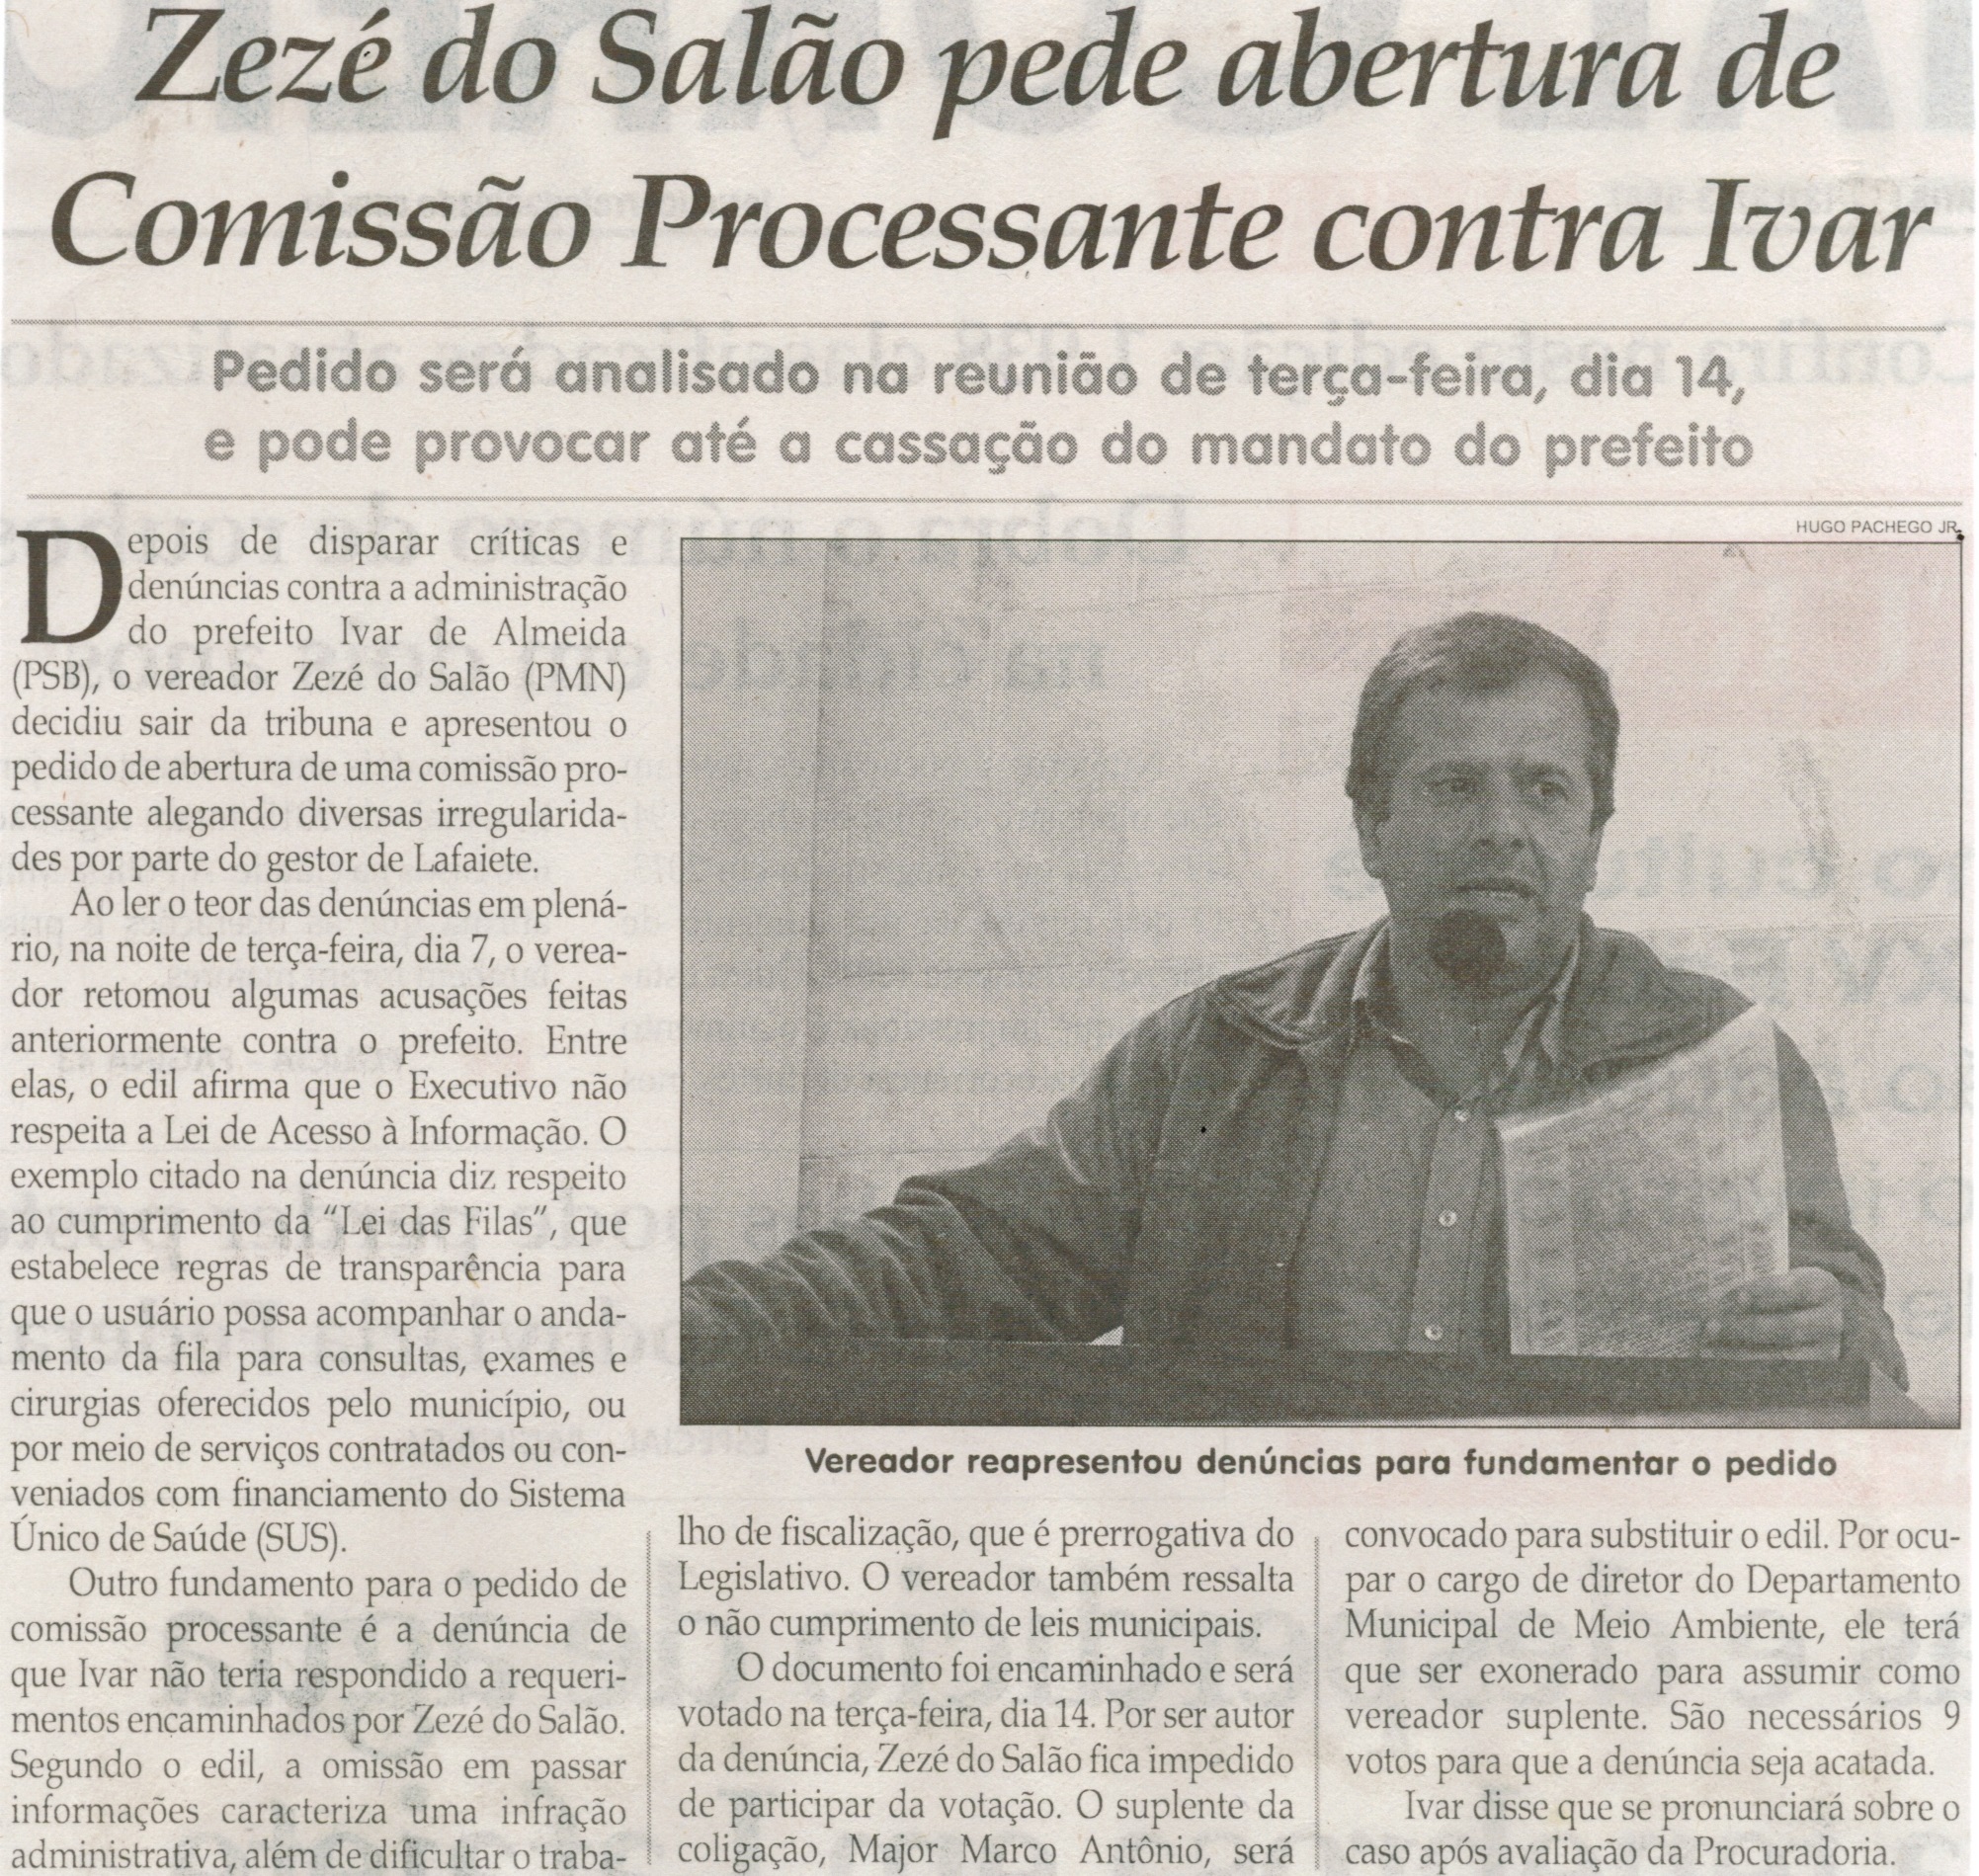 Zezé do Salão pede abertura de Comissão Processante contra Ivar. Jornal Correio da Cidade, Conselheiro Lafaiete, 17 jul. 2015, p.2.